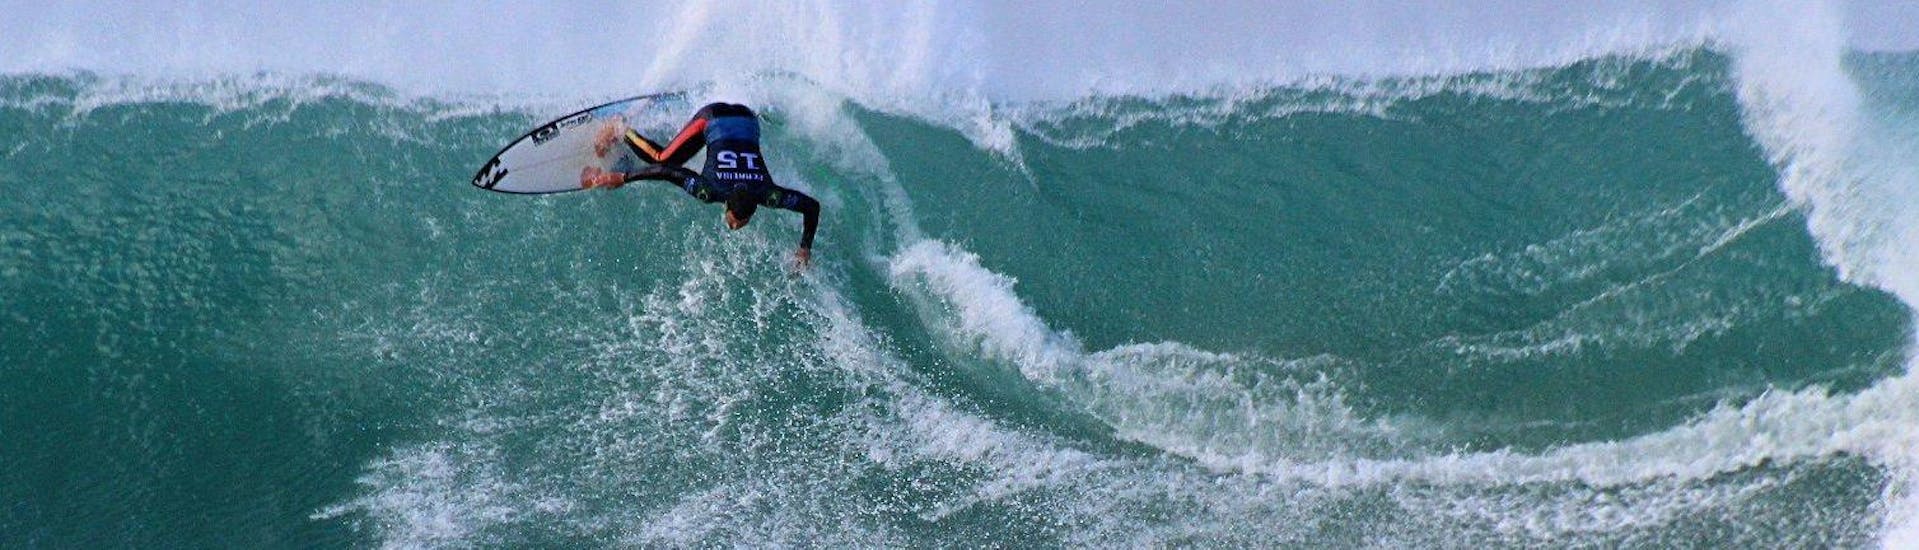 Lezioni di surf da 5 anni per surfisti avanzati.